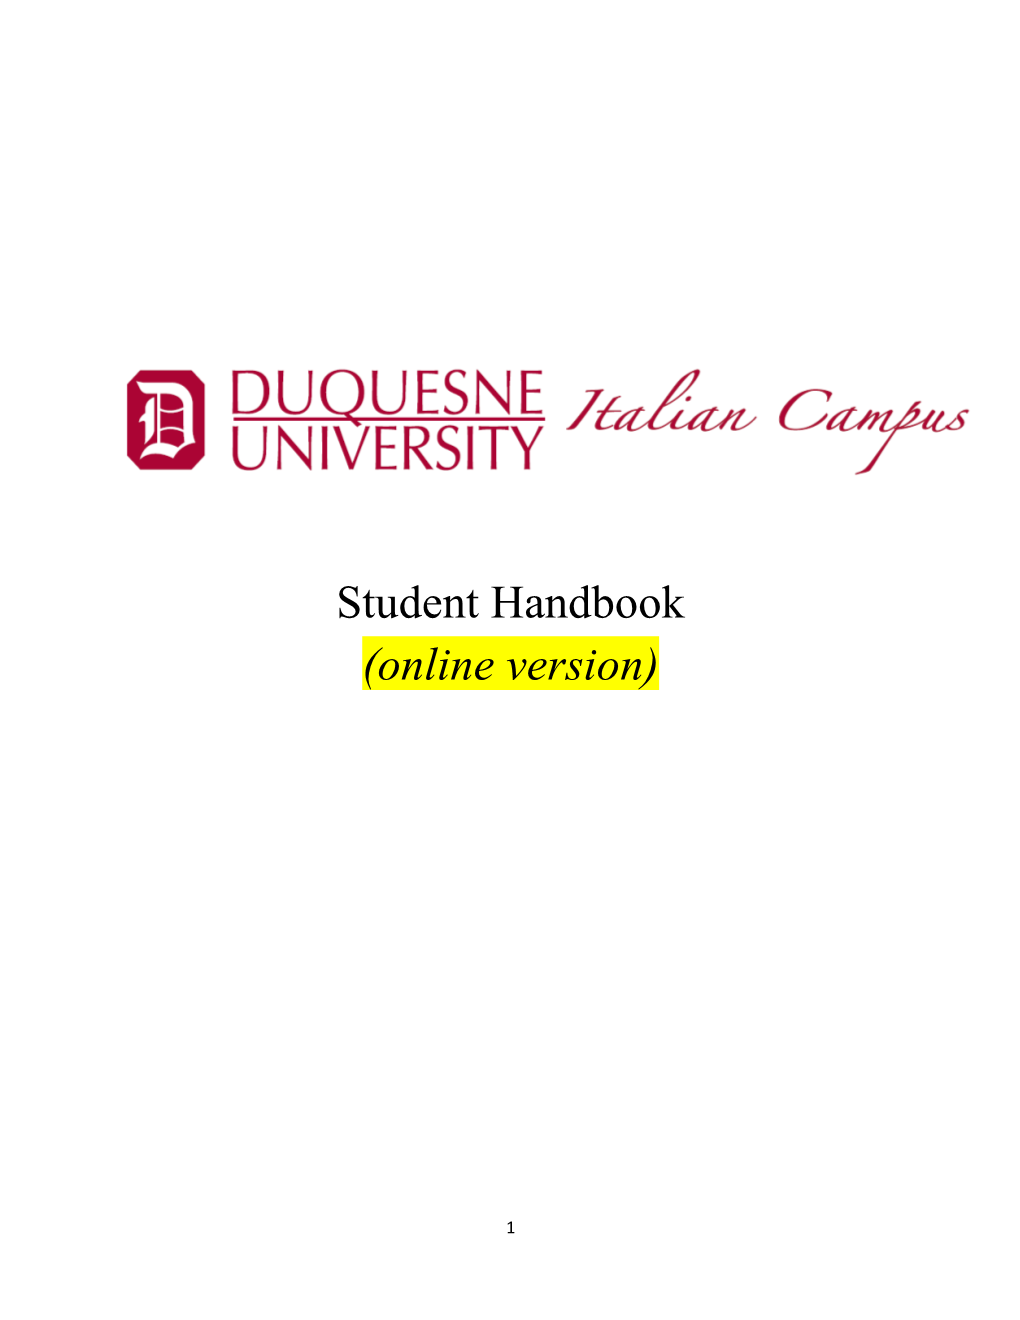 Student Handbook (Online Version)